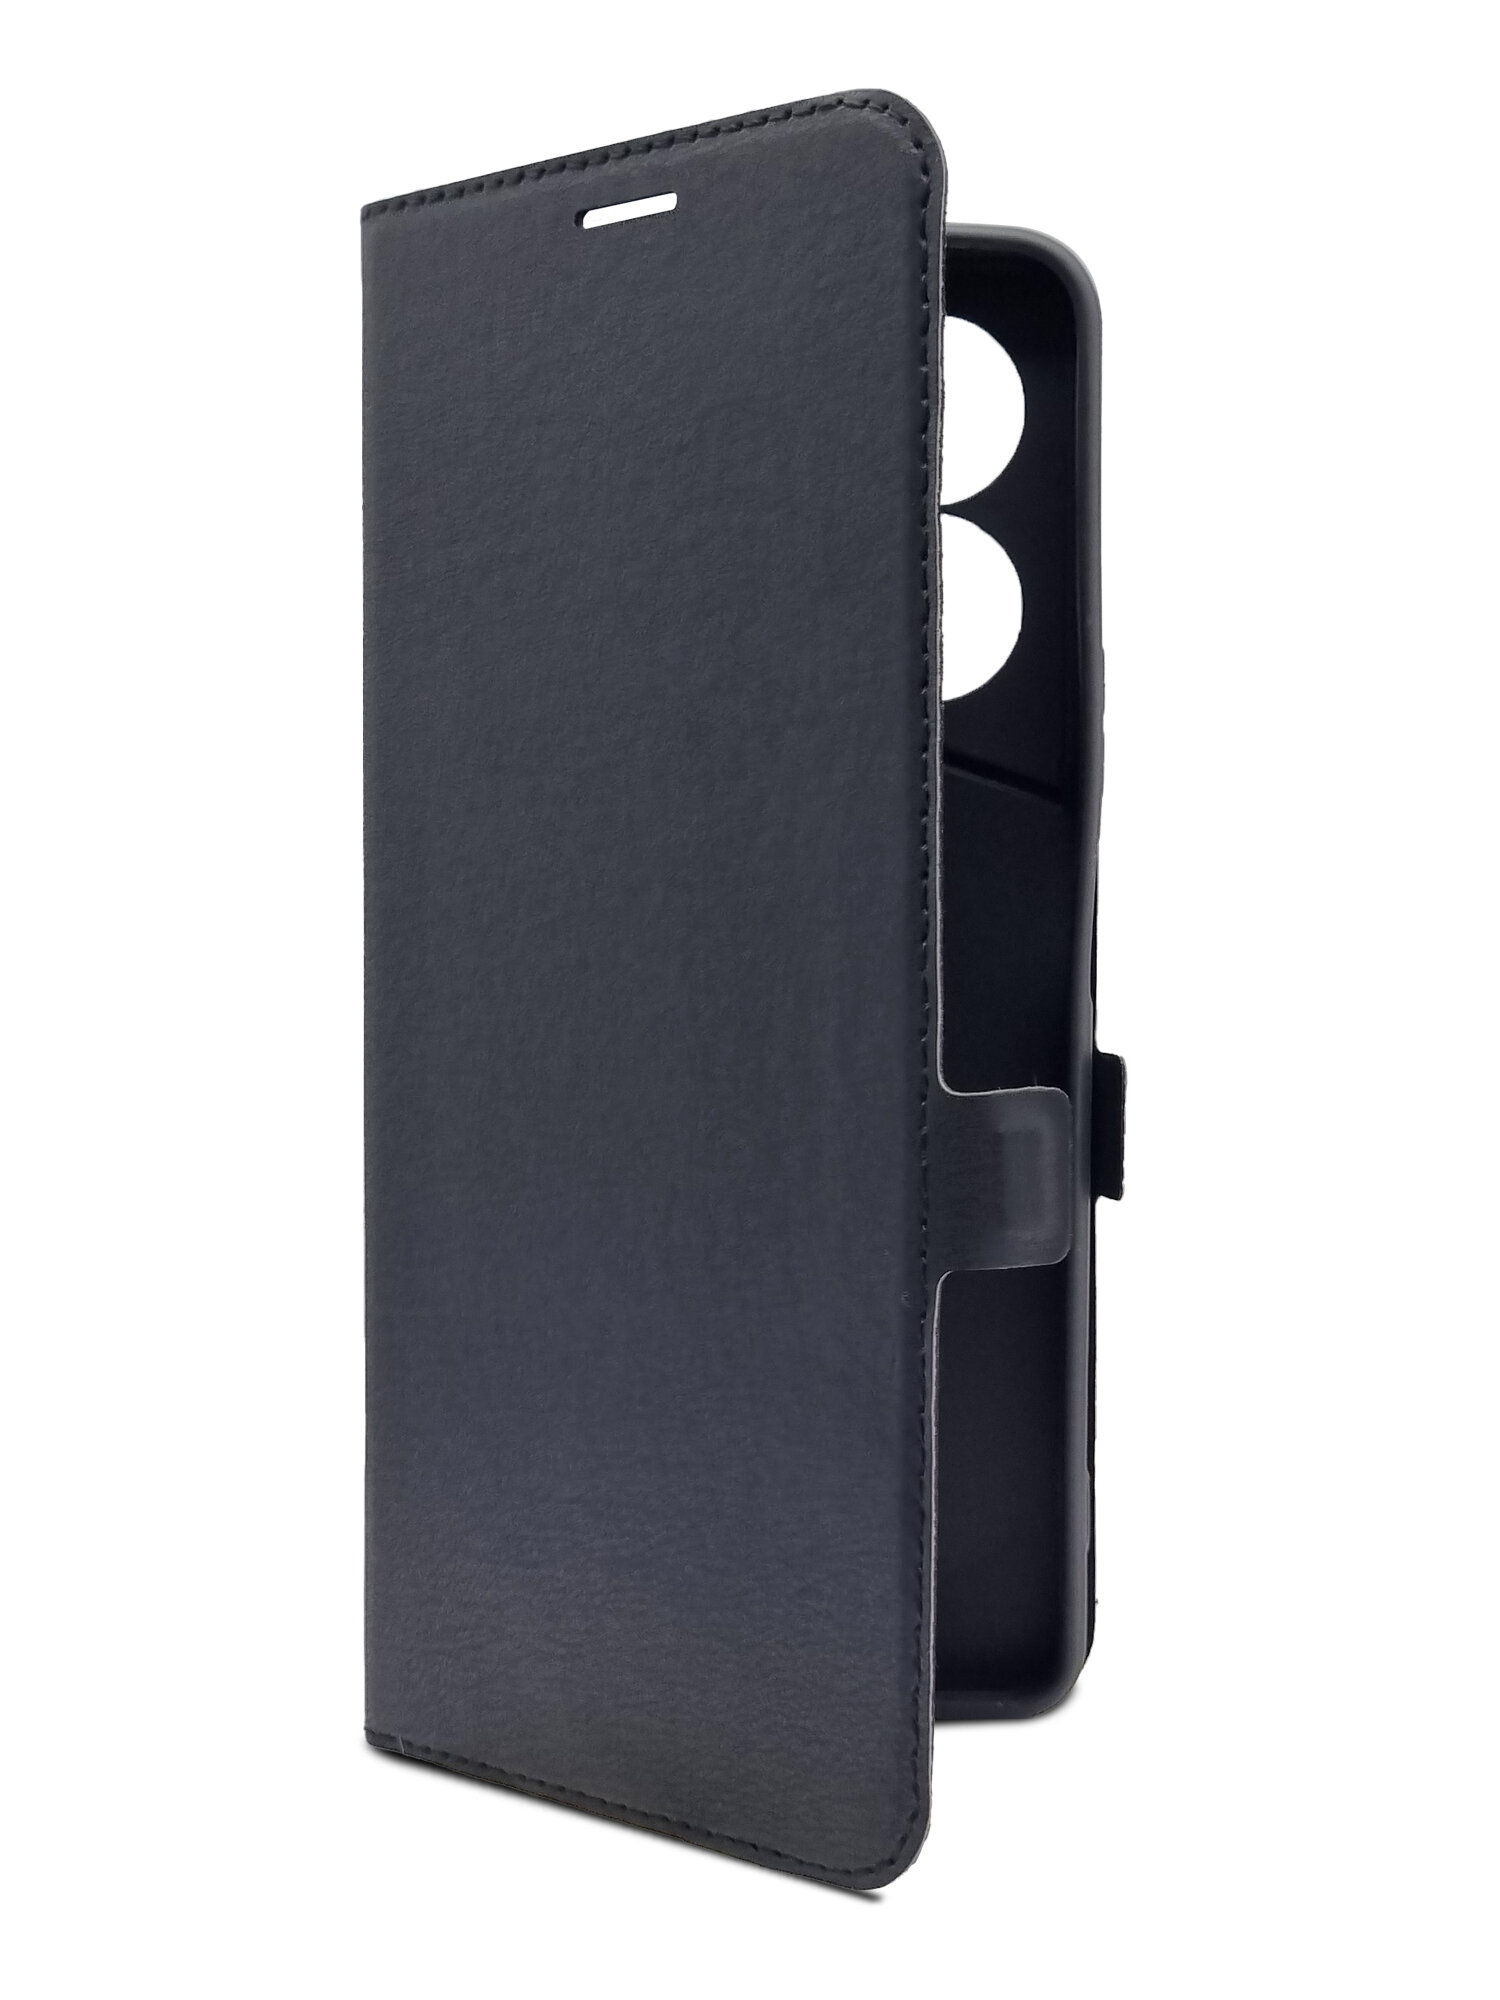 Чехол на Tecno Pova 5 Pro 5G (Техно Пова 5 Про 5г) черный книжка эко-кожа с функцией подставки отделением для карт и магнитами Book case, Brozo